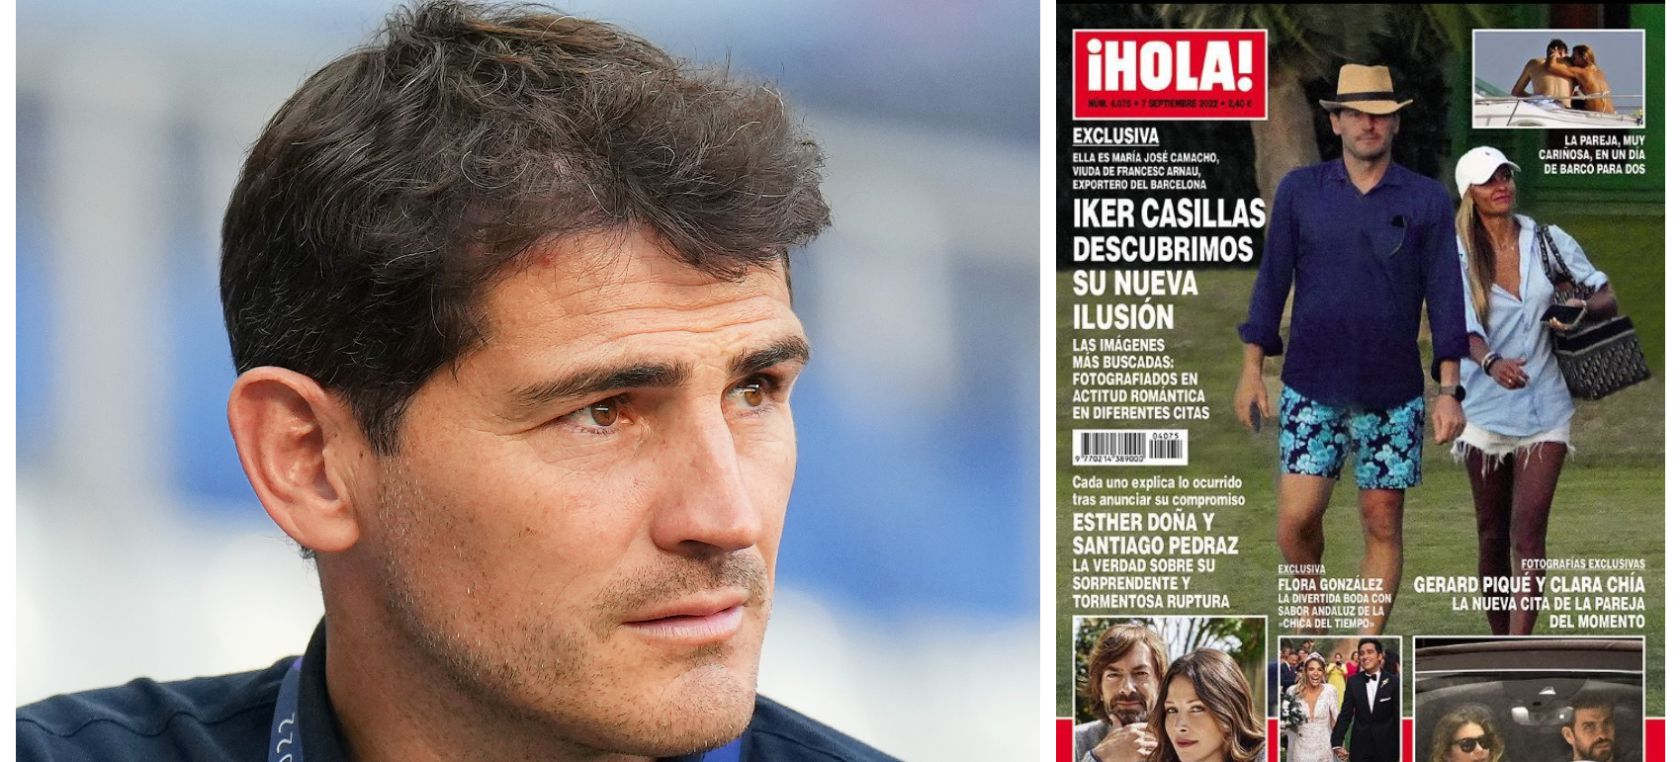 Iker Casillas y María José Camacho: una bonita amistad que copa hoy las portadas